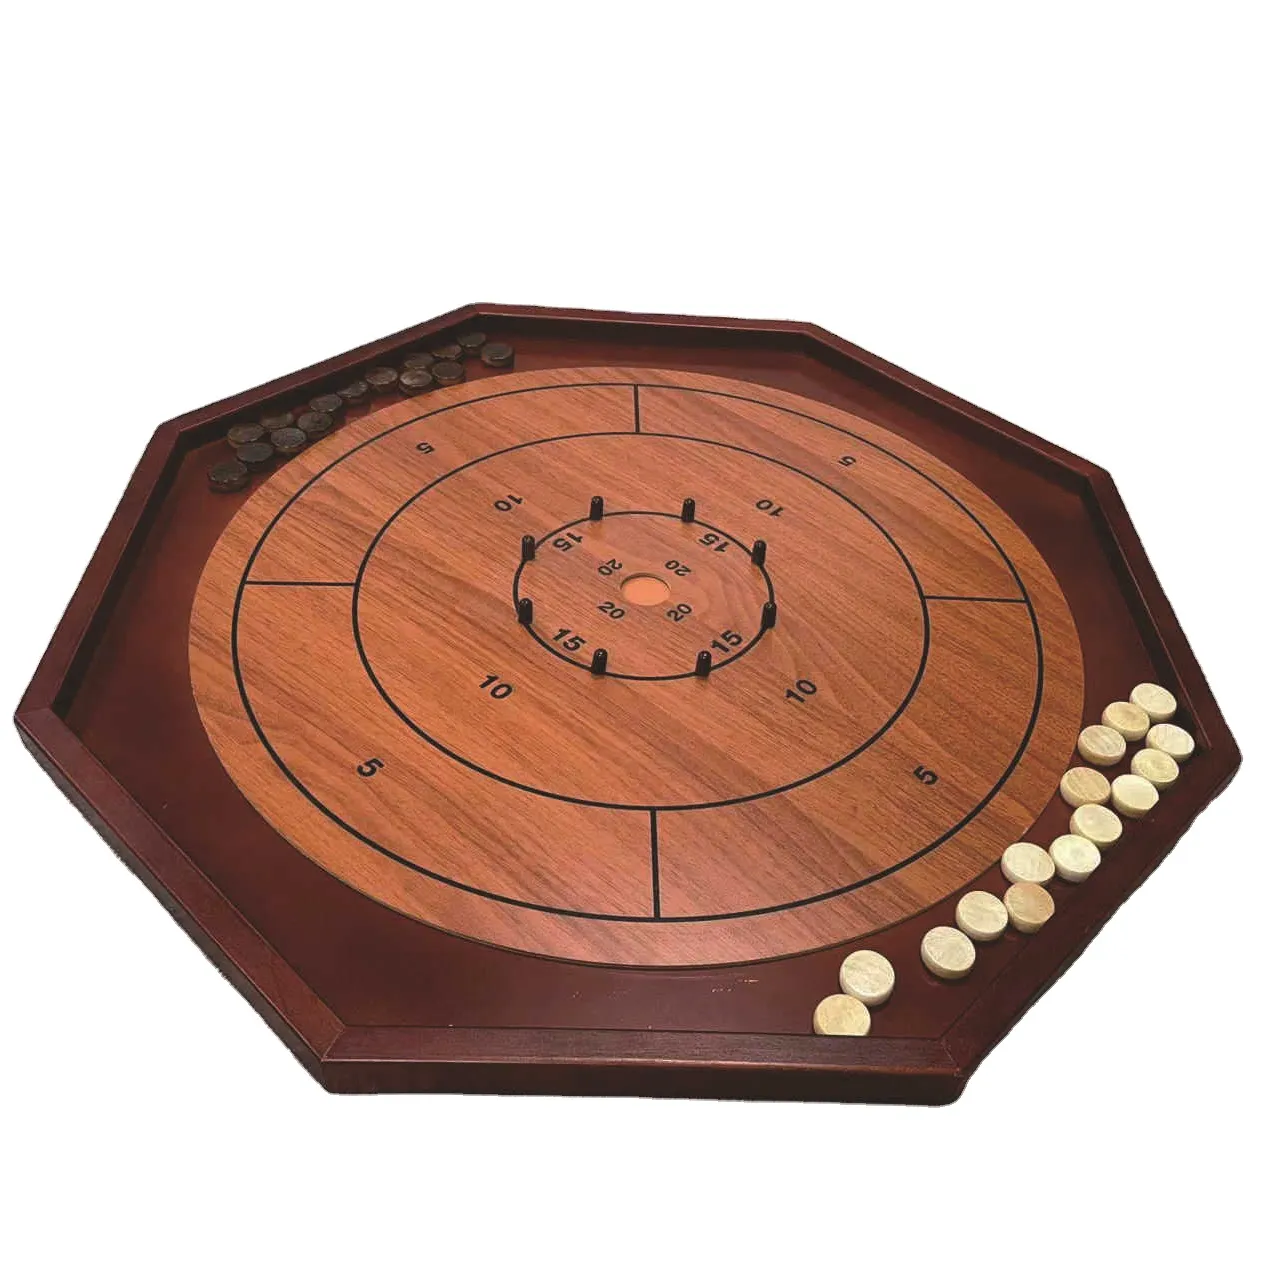 Juego de tablero de madera Crokinole Deluxe Games 3 en 1 con Checker y backgammon